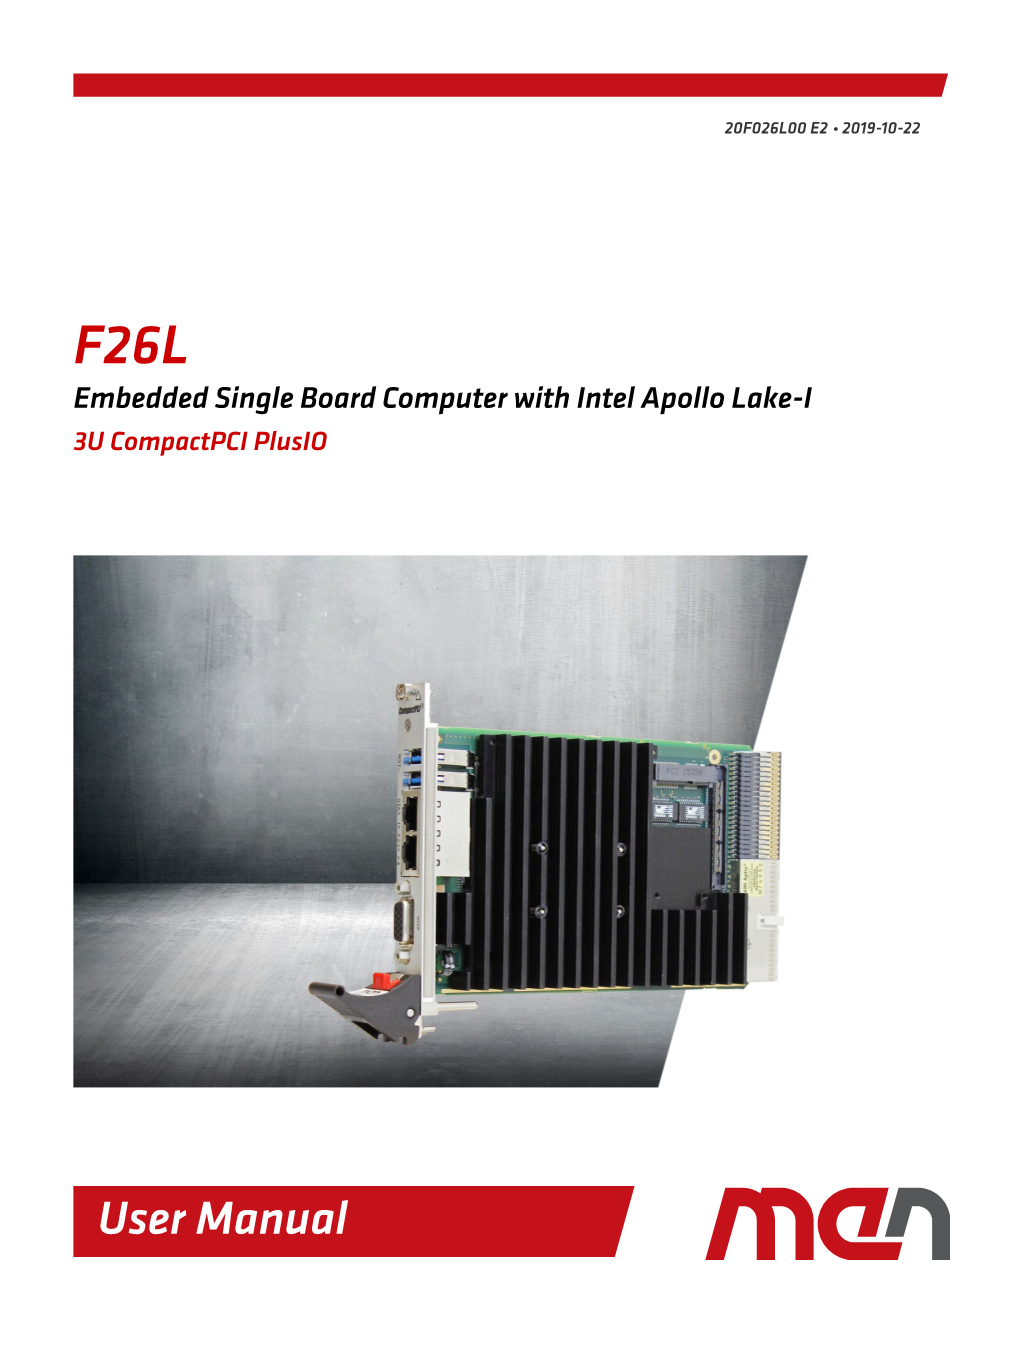 F26L User Manual